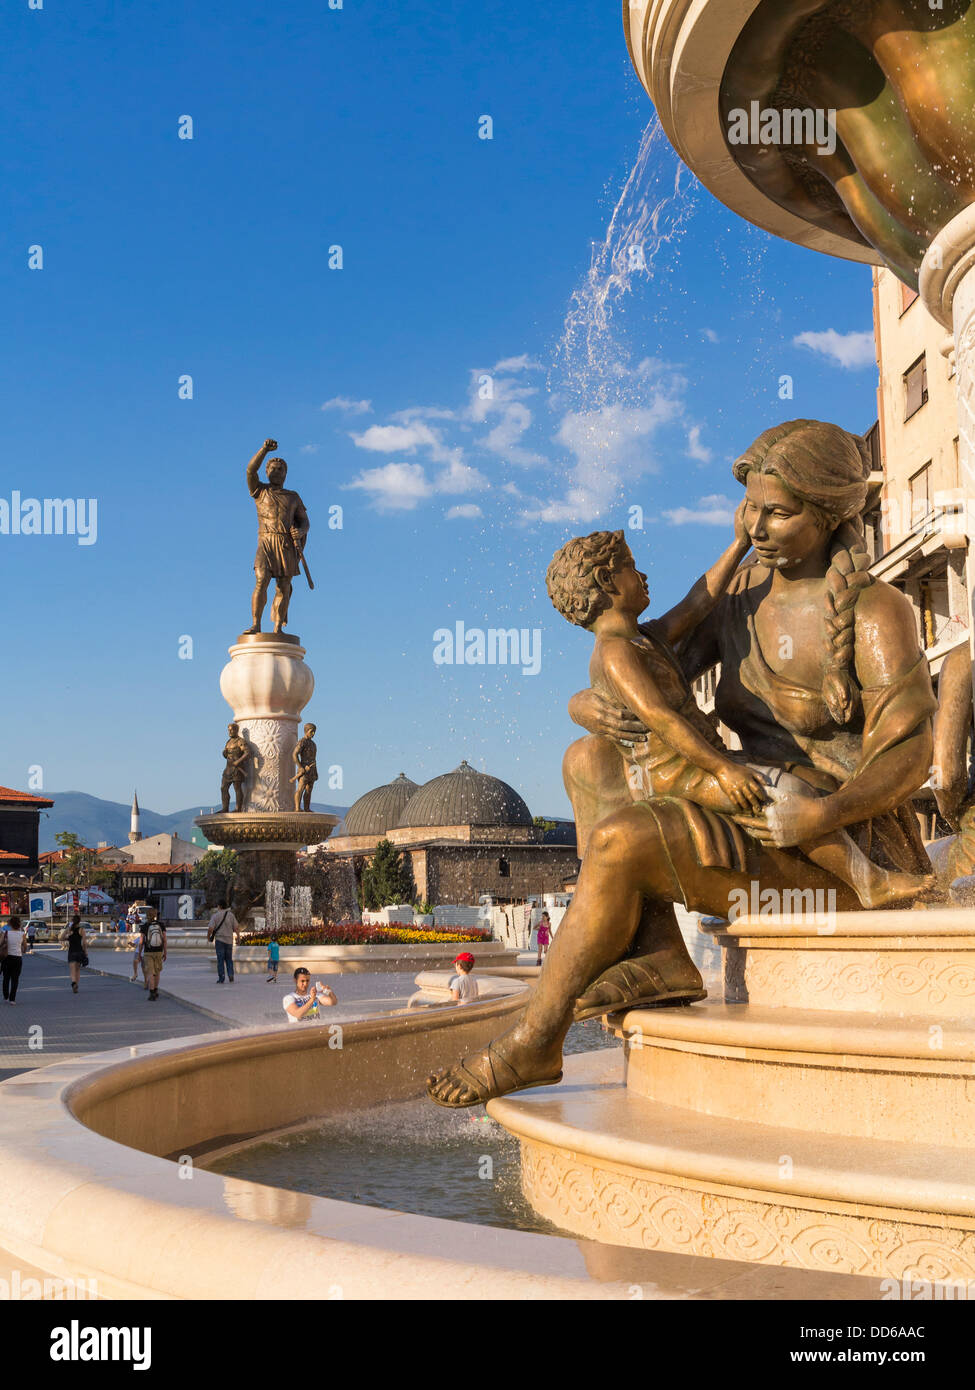 Les mères de Macédoine, Skopje, Macédoine Fontaine en rébellion Square avec le nouveau monument guerrier derrière Banque D'Images